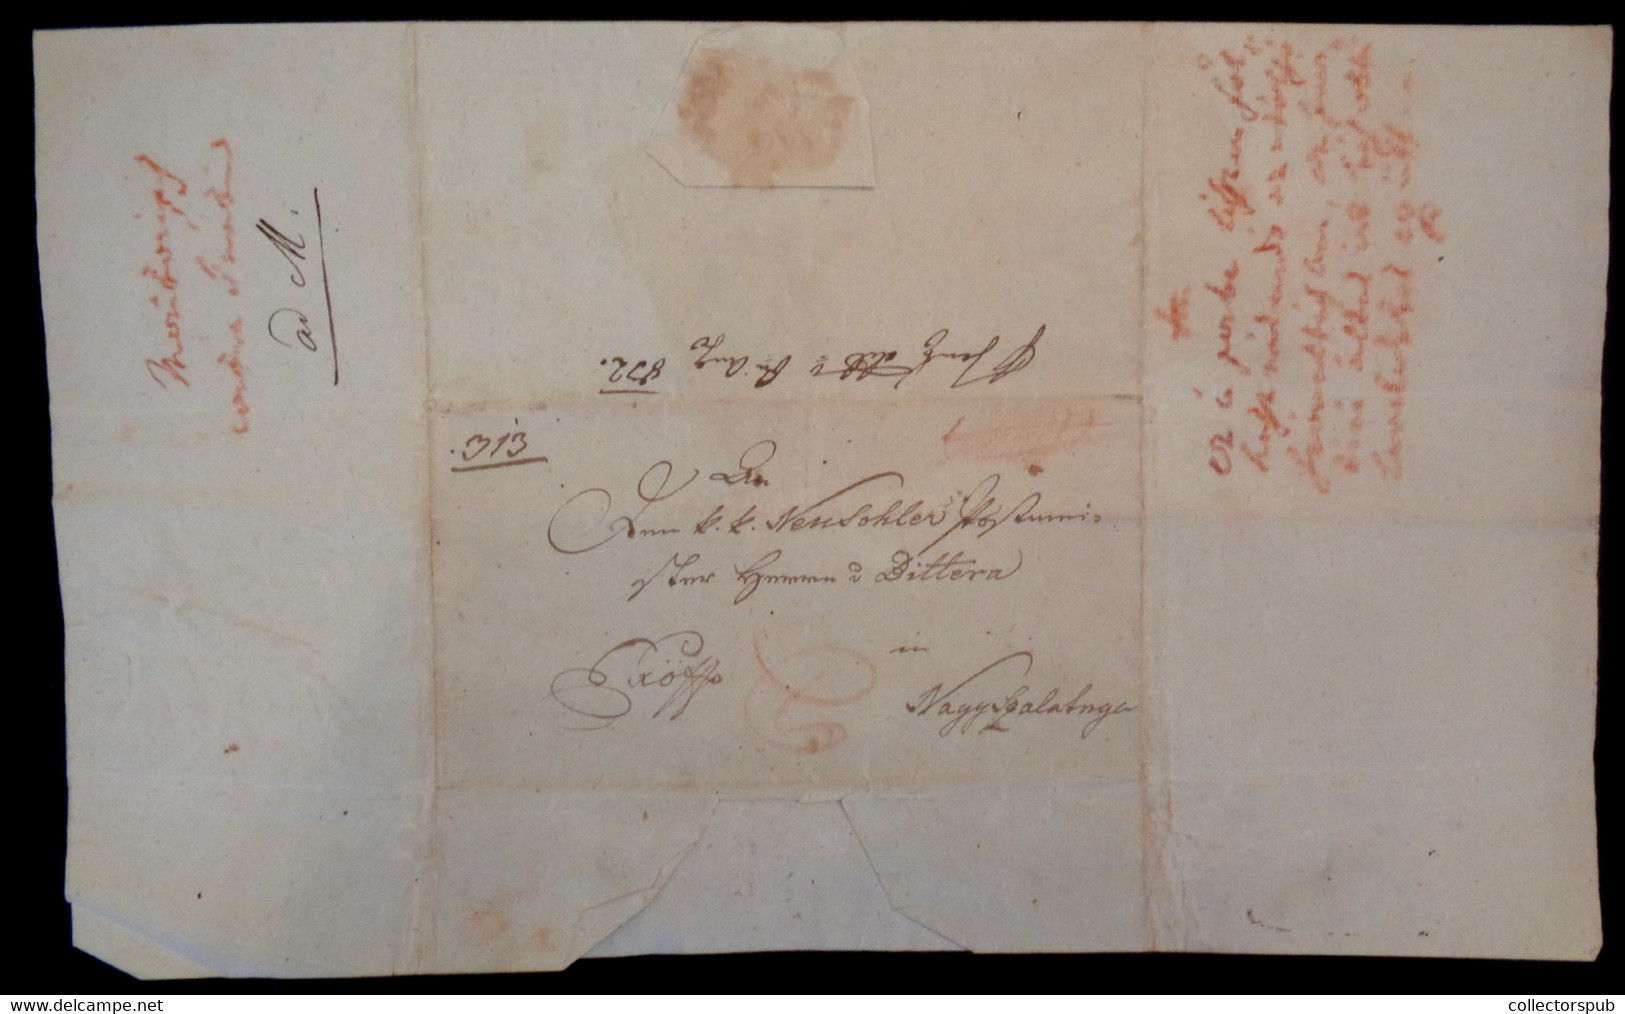 POZSONY 1832. Érdekes Postaszolgálati Ex Offo Levél Nagyszalatnára Küldve, A Postamesternek - ...-1867 Voorfilatelie